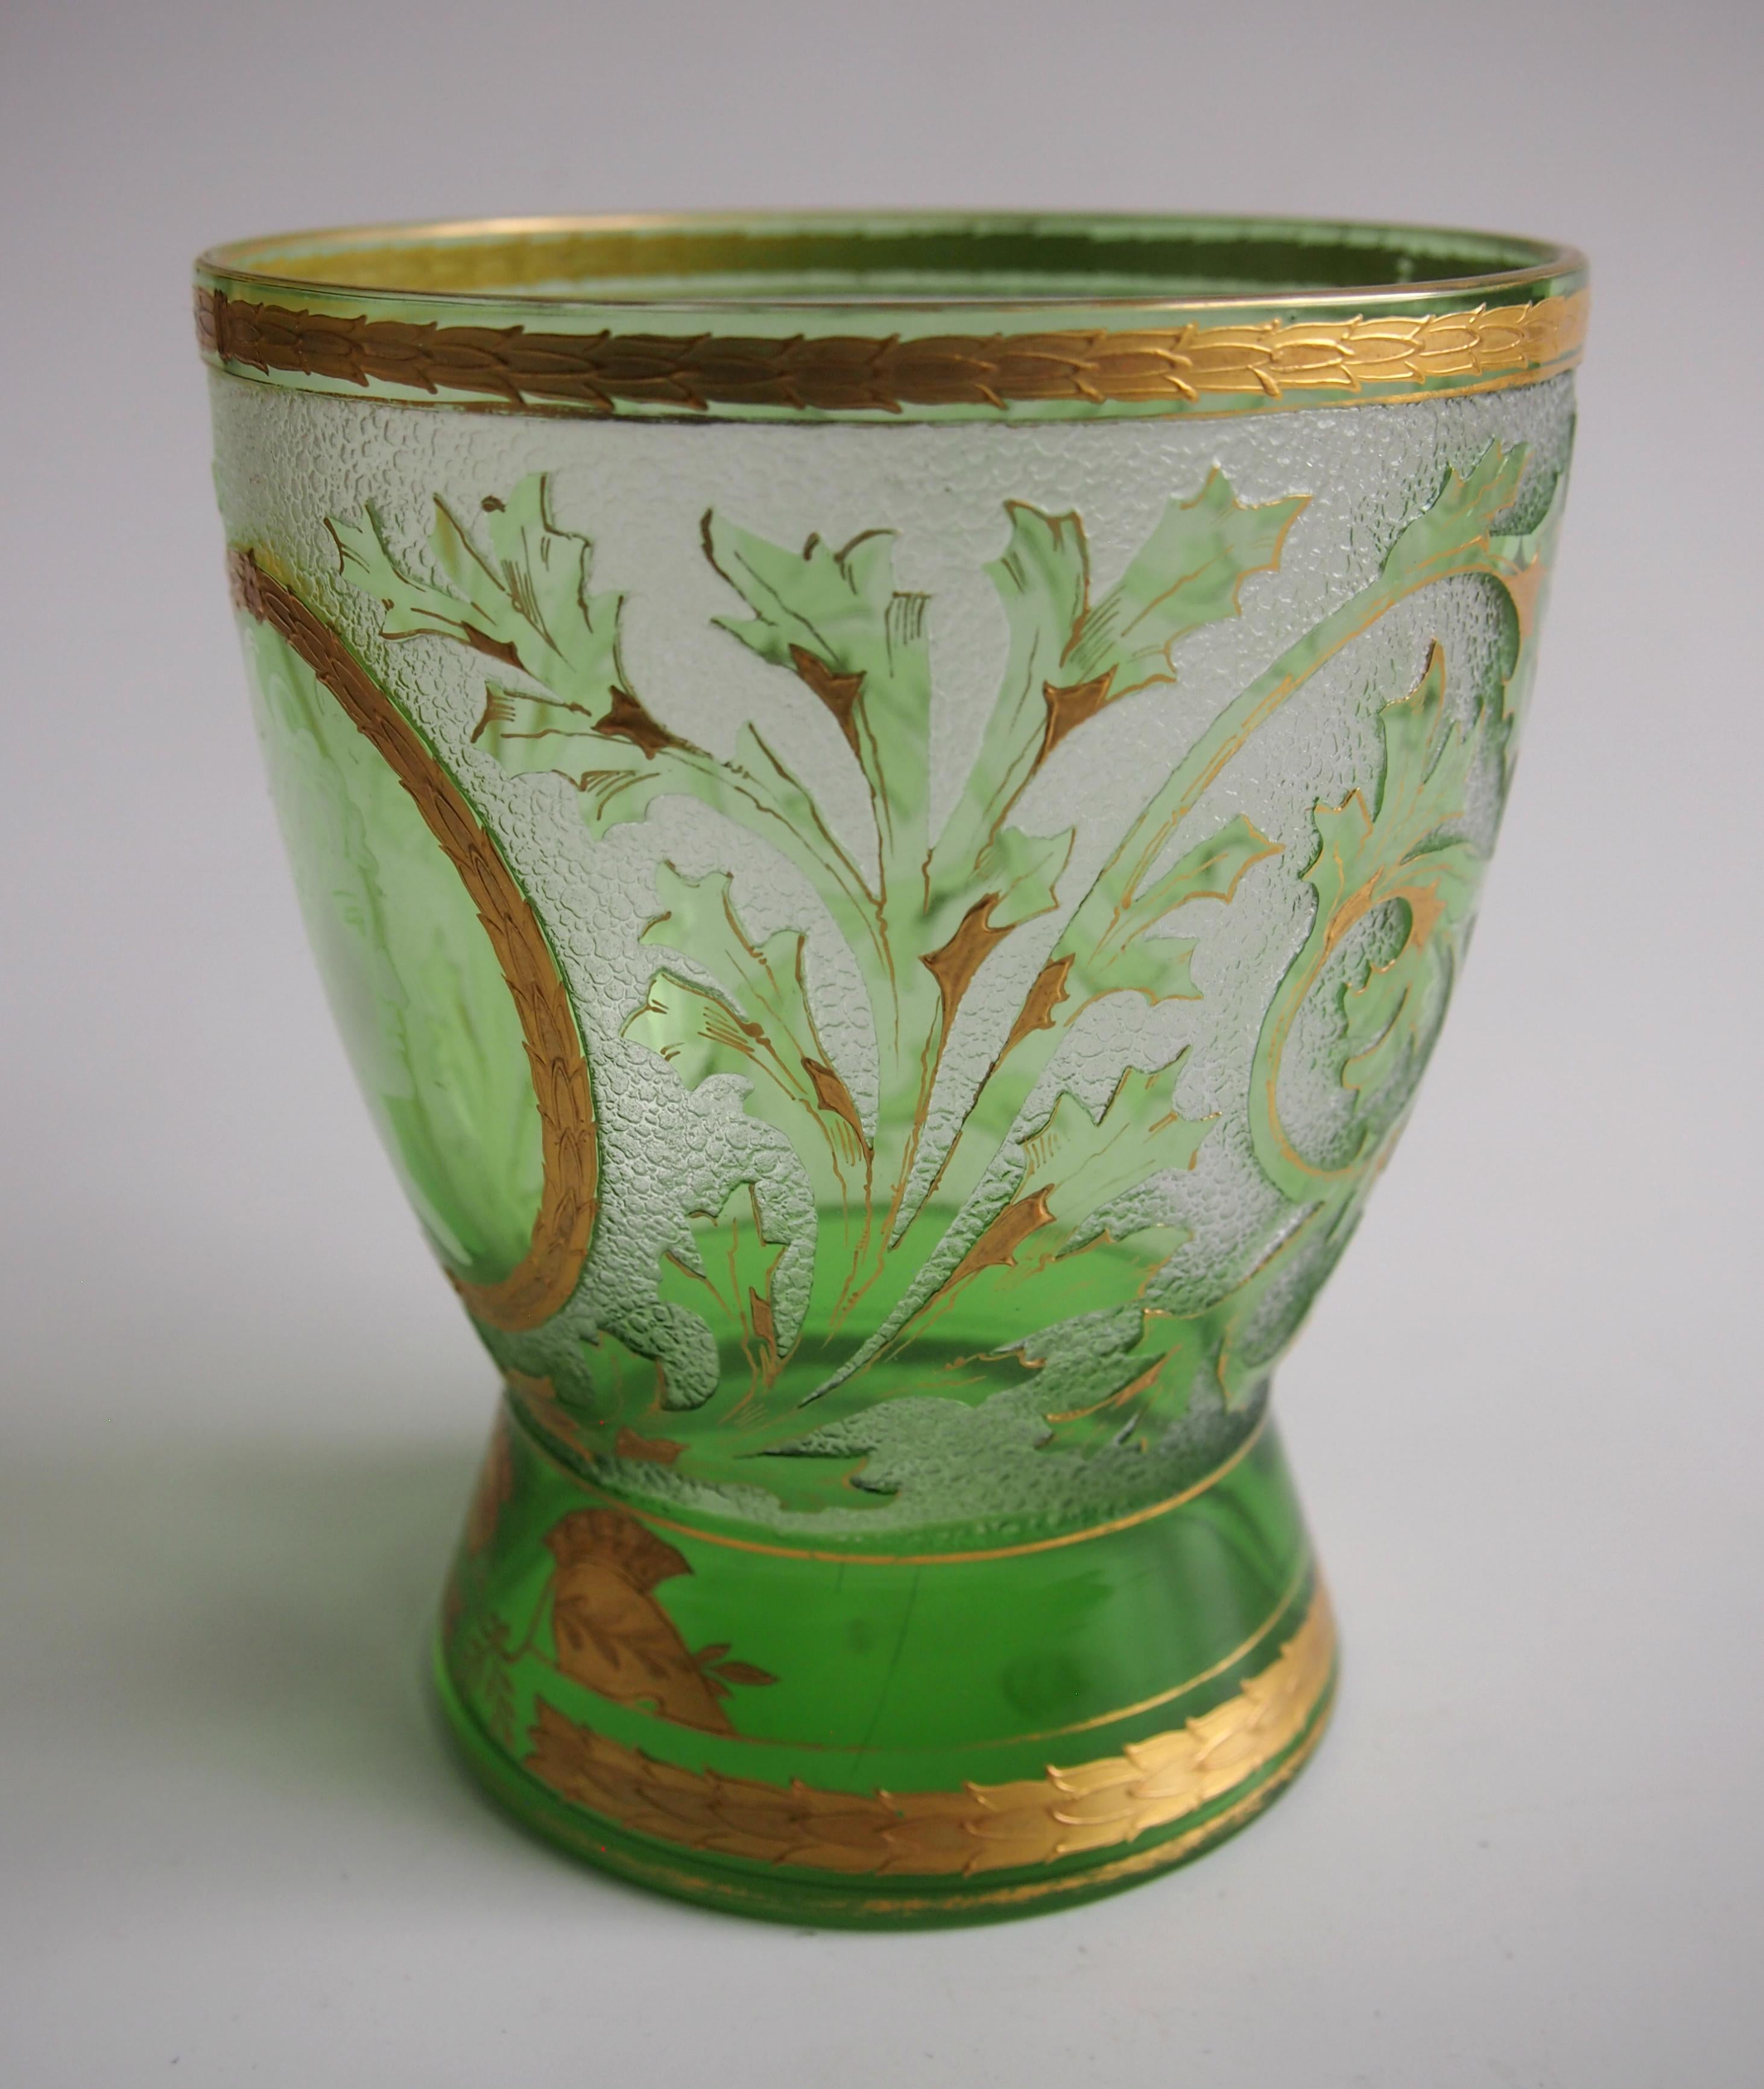 Superbe vase Riedel en camée et doré, vert sur transparent - 'Helmet'. Le corps principal est décoré de feuilles et de branches vertes soulignées par des dorures. Il présente un visage de profil blanc très fin d'une dame dans un cartouche d'or. Il